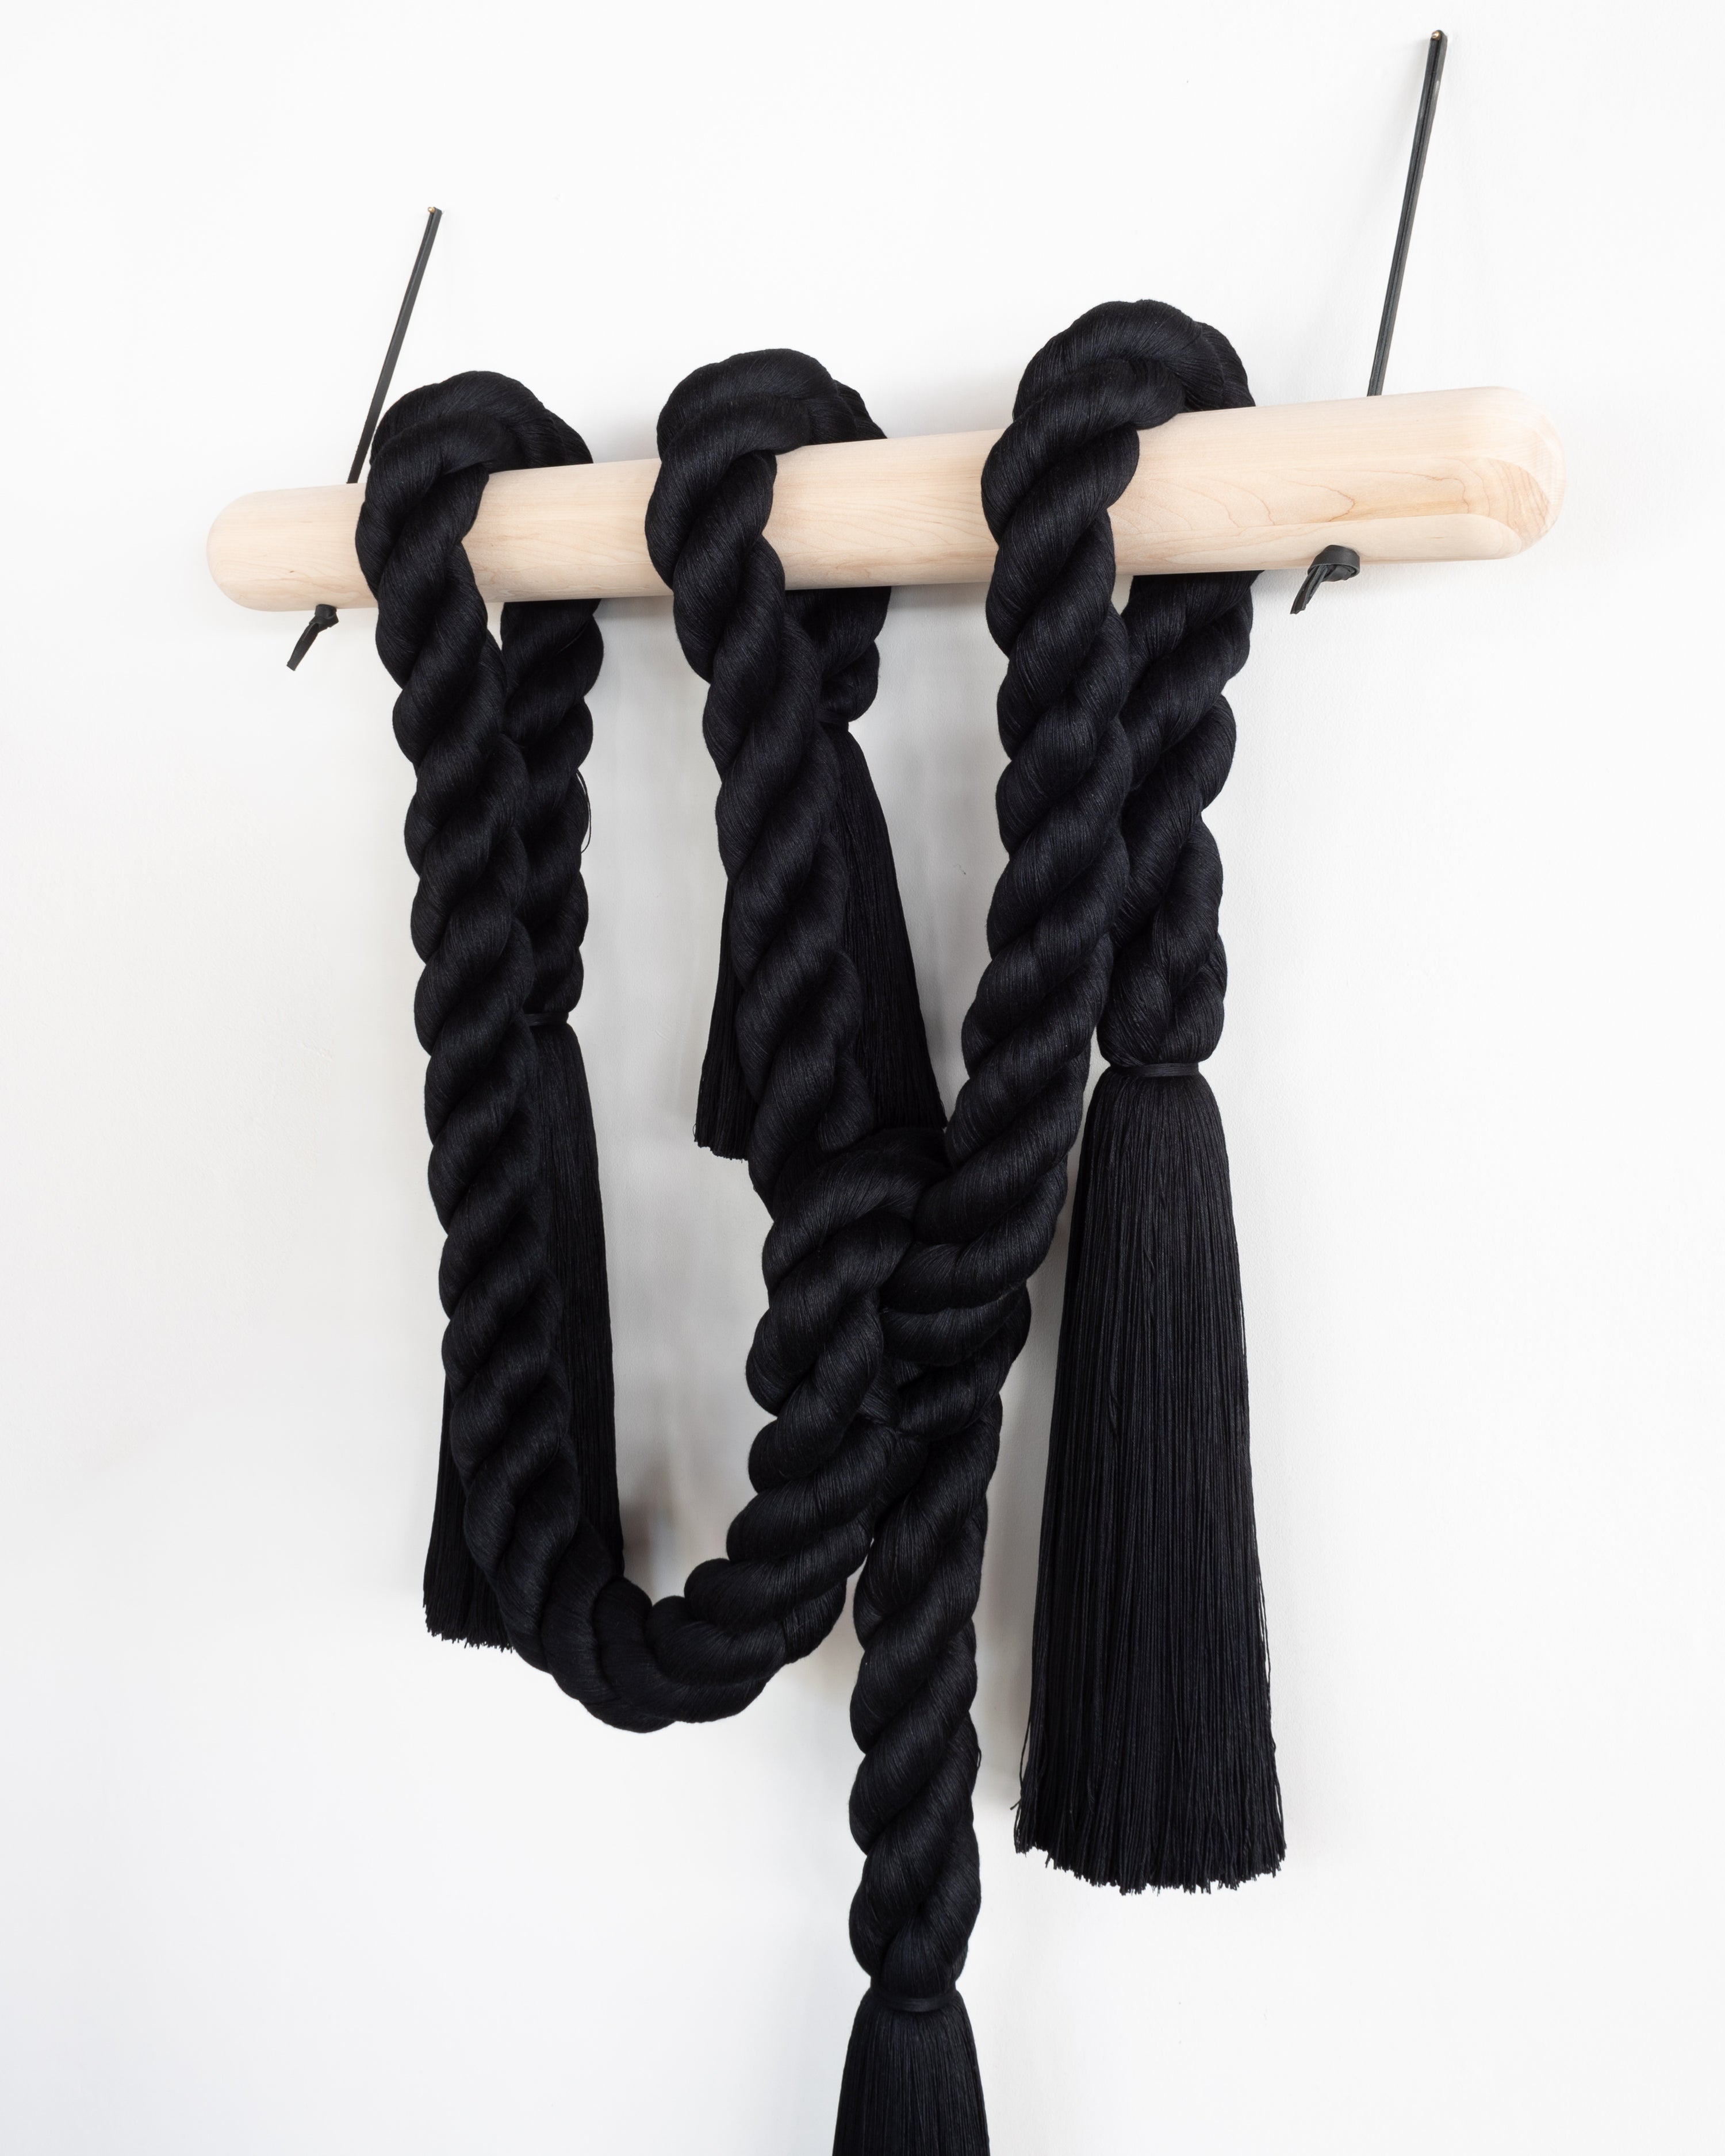 Rope Sculptures – Cindy Hsu Zell